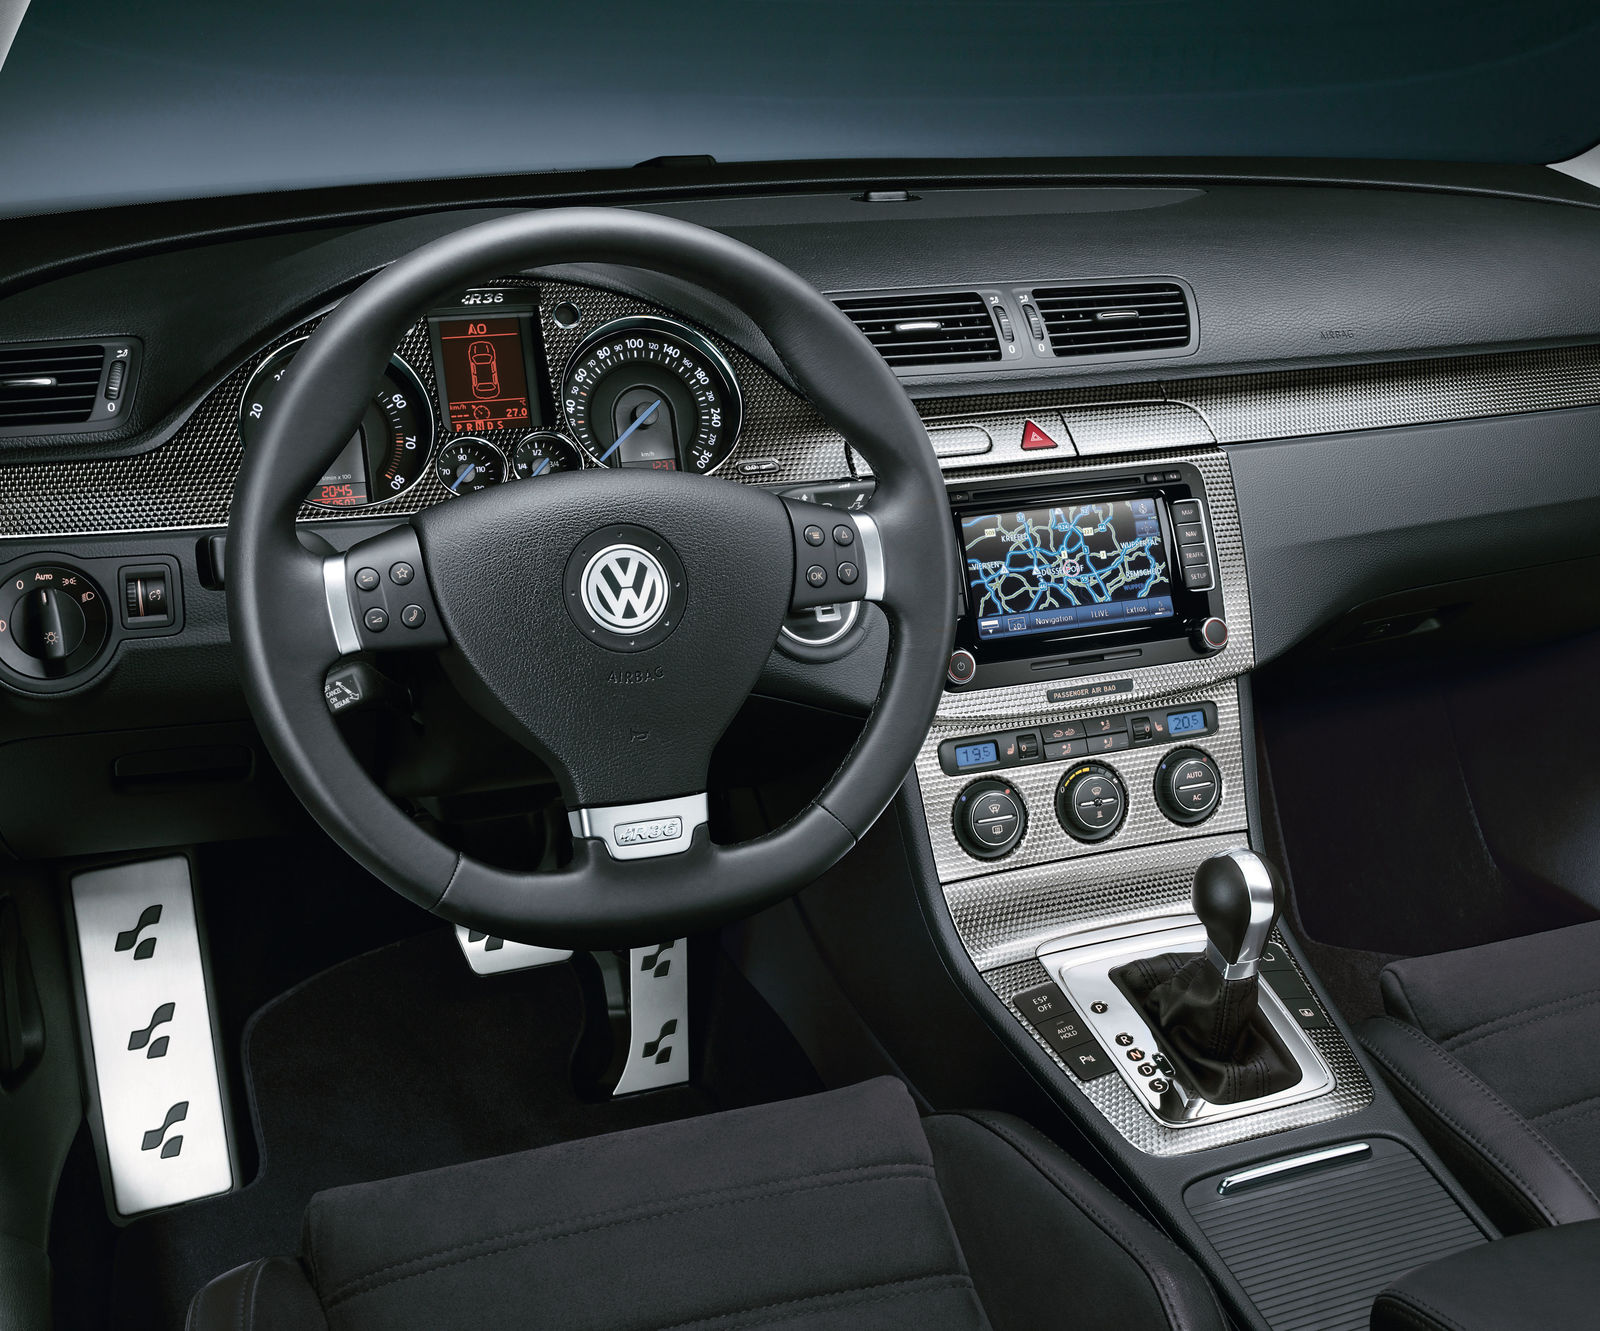 Автомобиль пассат б6. Фольксваген Пассат b6 салон. B6 Фольксваген Пассат 2007. VW Passat b6 Interior. Volkswagen Passat b6 салон.